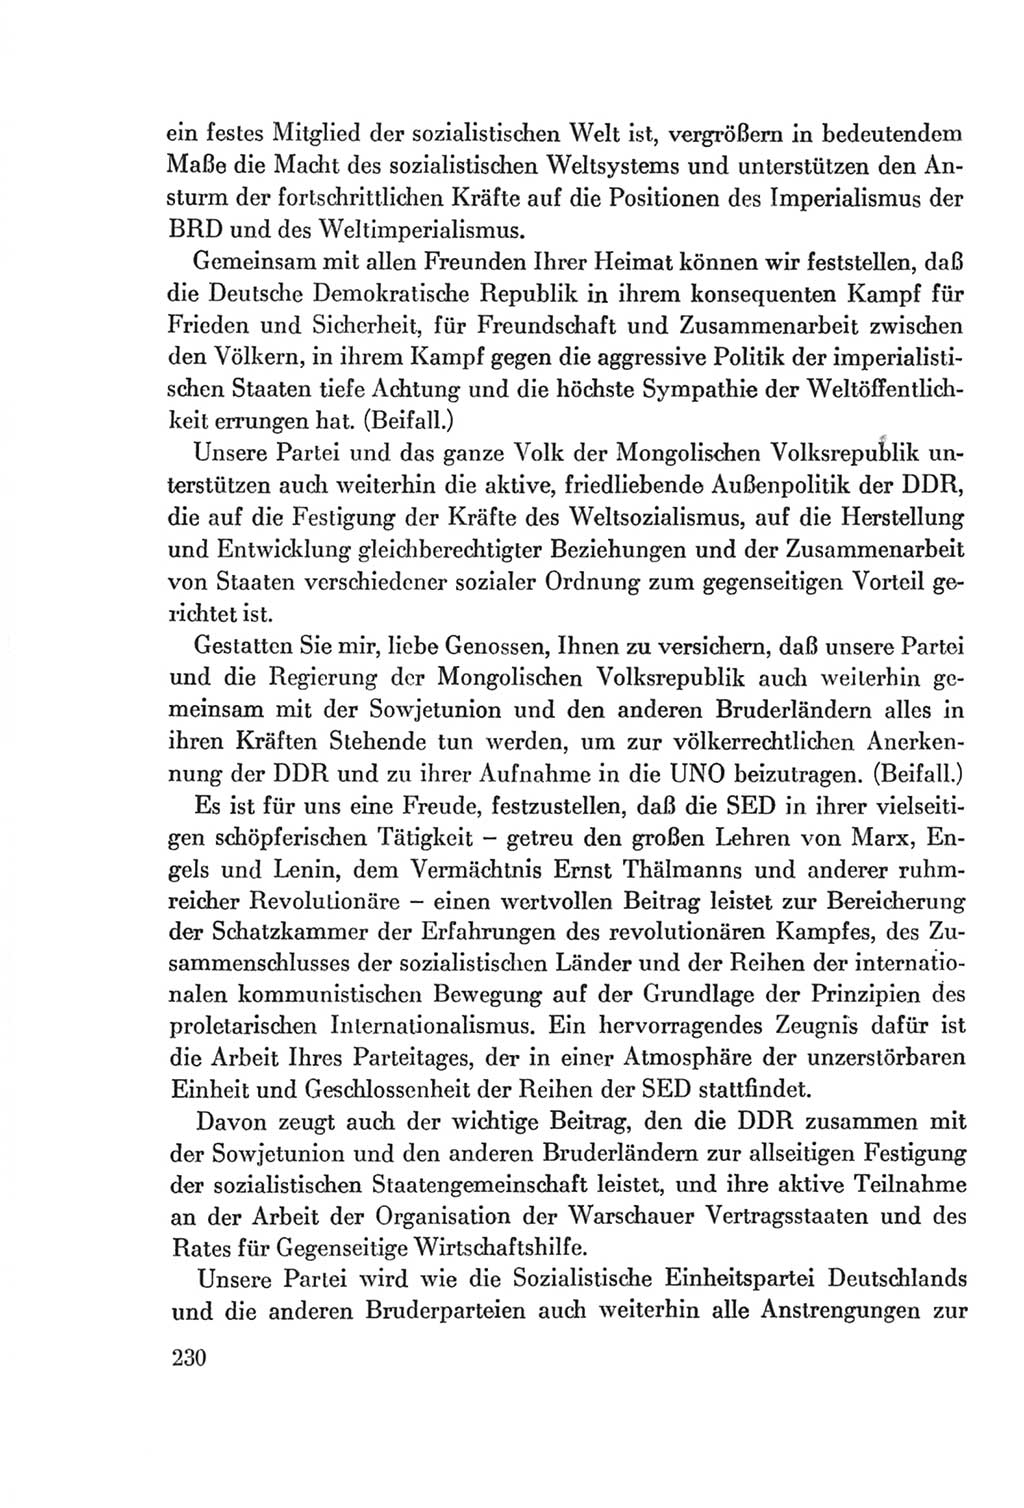 Protokoll der Verhandlungen des Ⅷ. Parteitages der Sozialistischen Einheitspartei Deutschlands (SED) [Deutsche Demokratische Republik (DDR)] 1971, Band 1, Seite 230 (Prot. Verh. Ⅷ. PT SED DDR 1971, Bd. 1, S. 230)